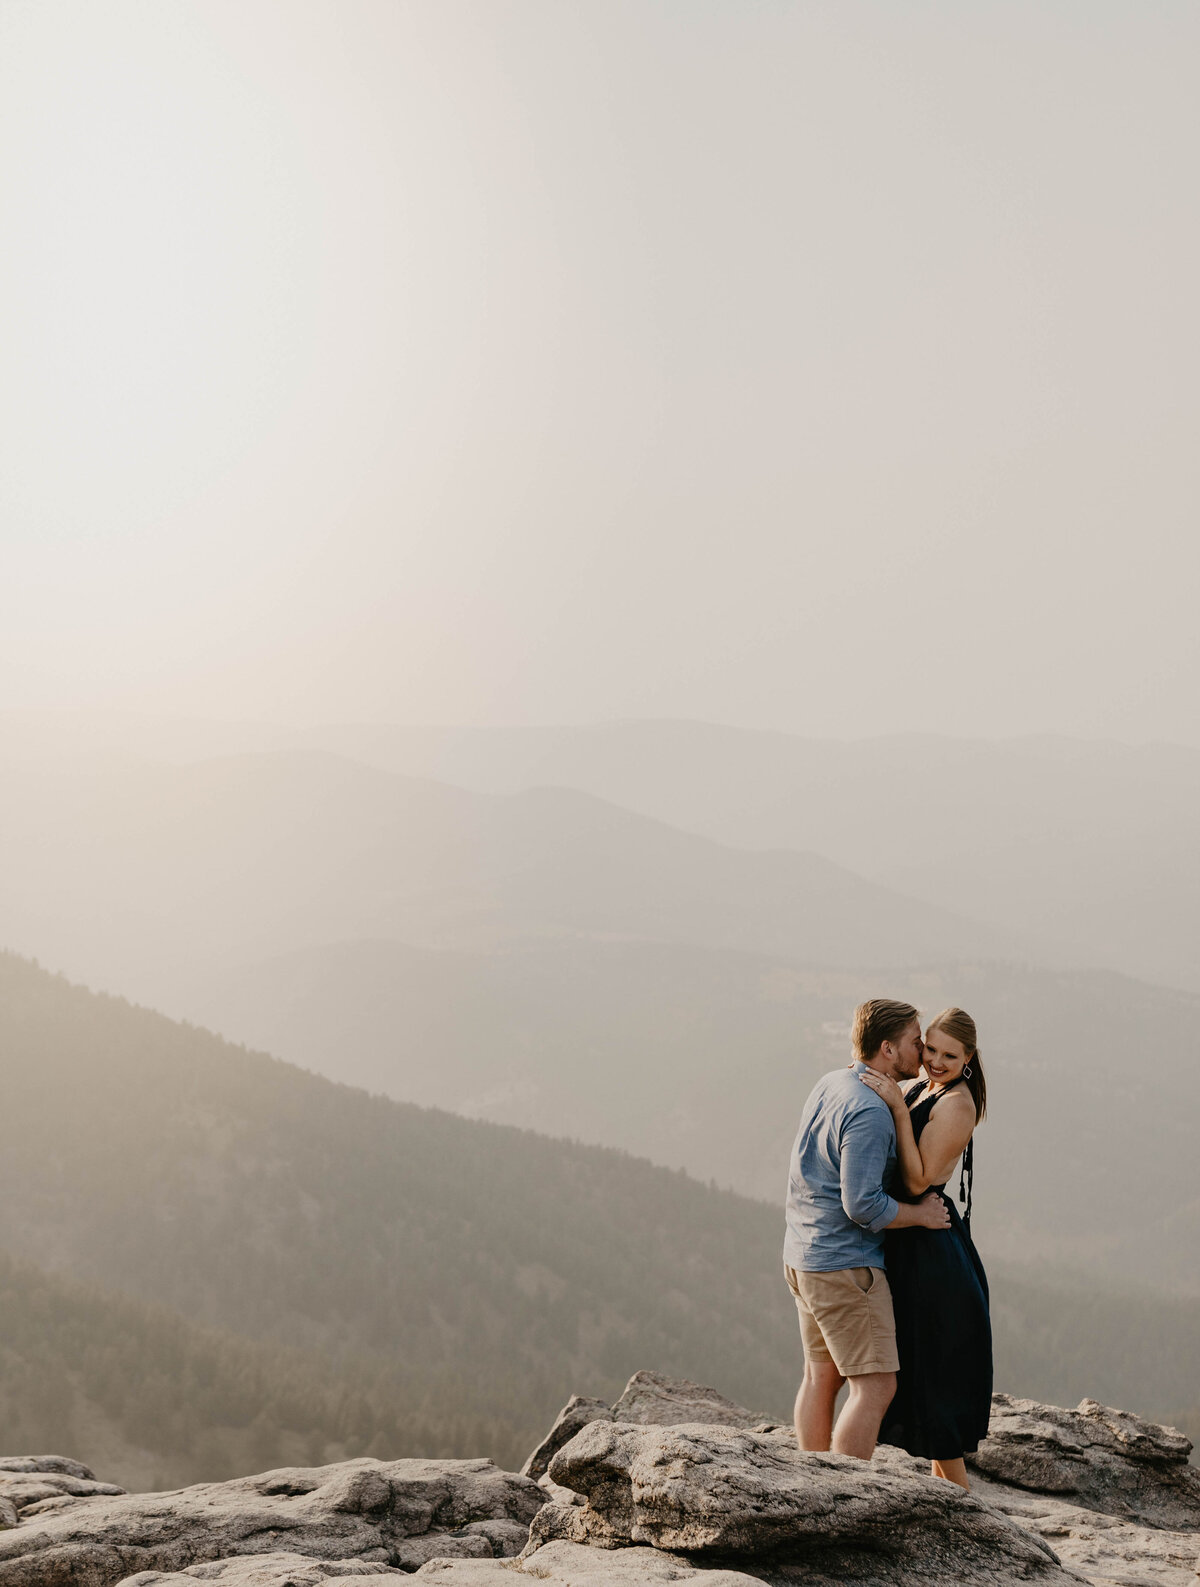 Boy kissing girl on mountain top in Boulder Colorado